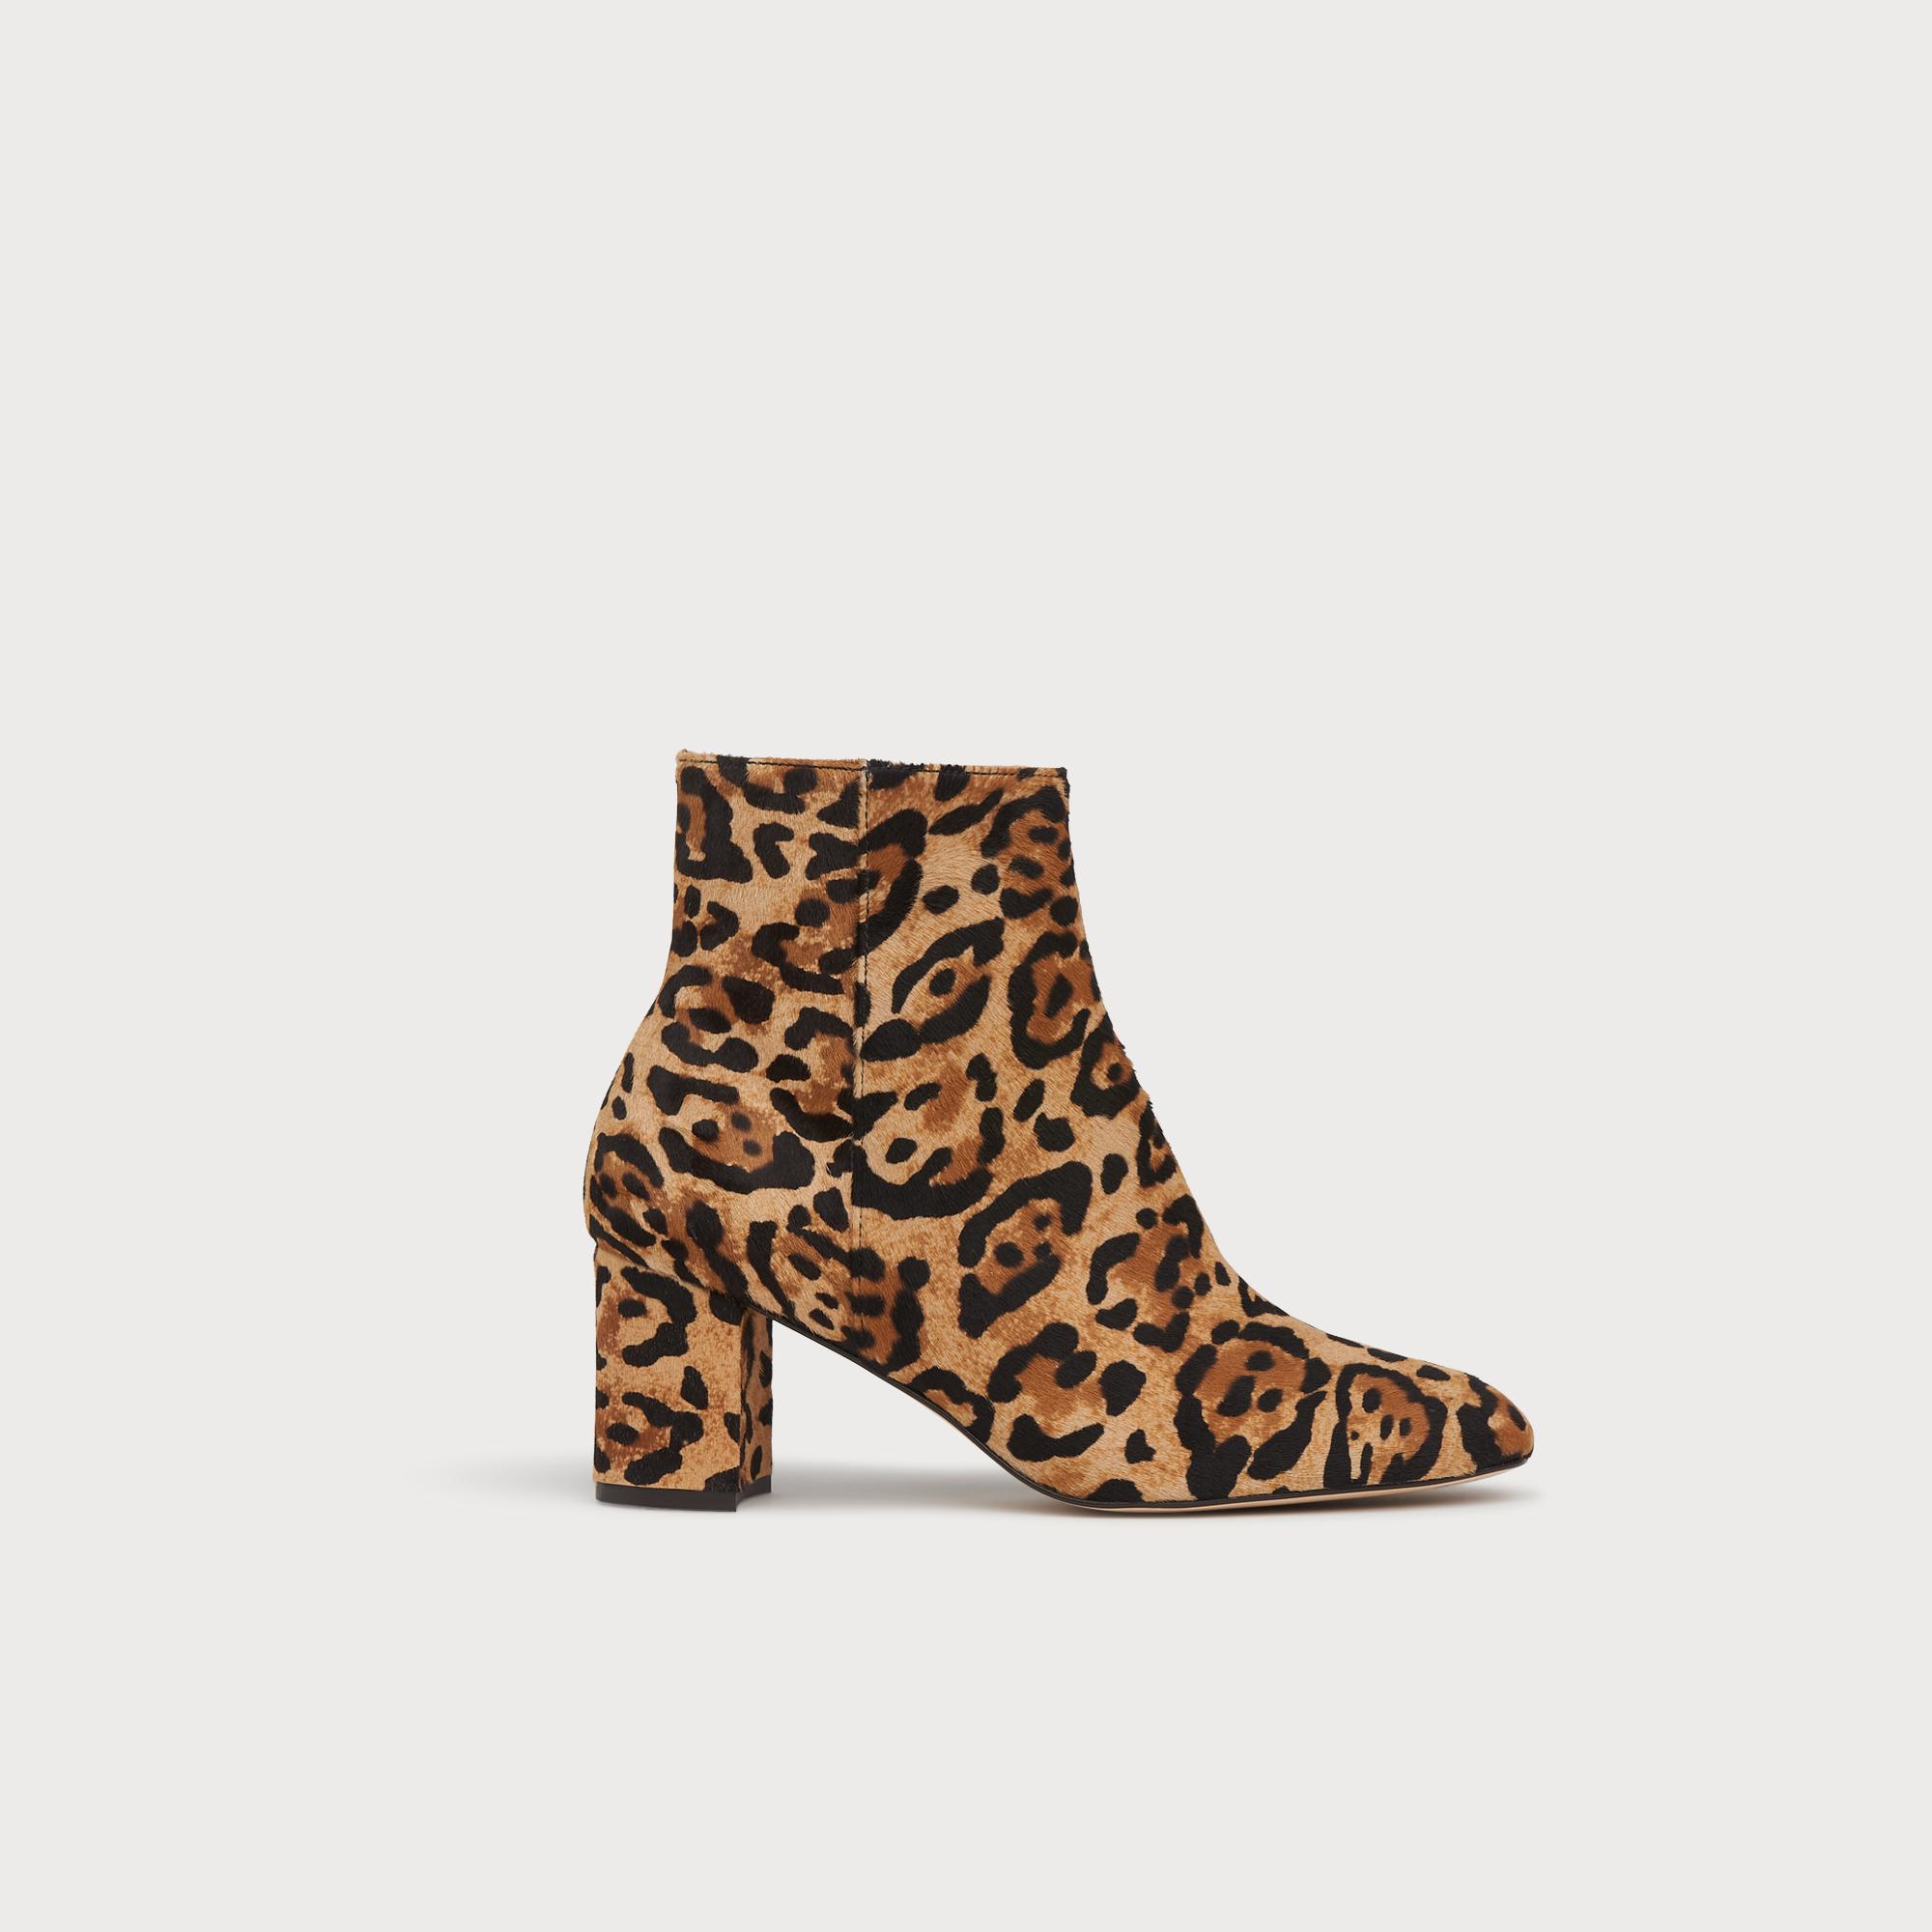 lk bennett leopard shoes